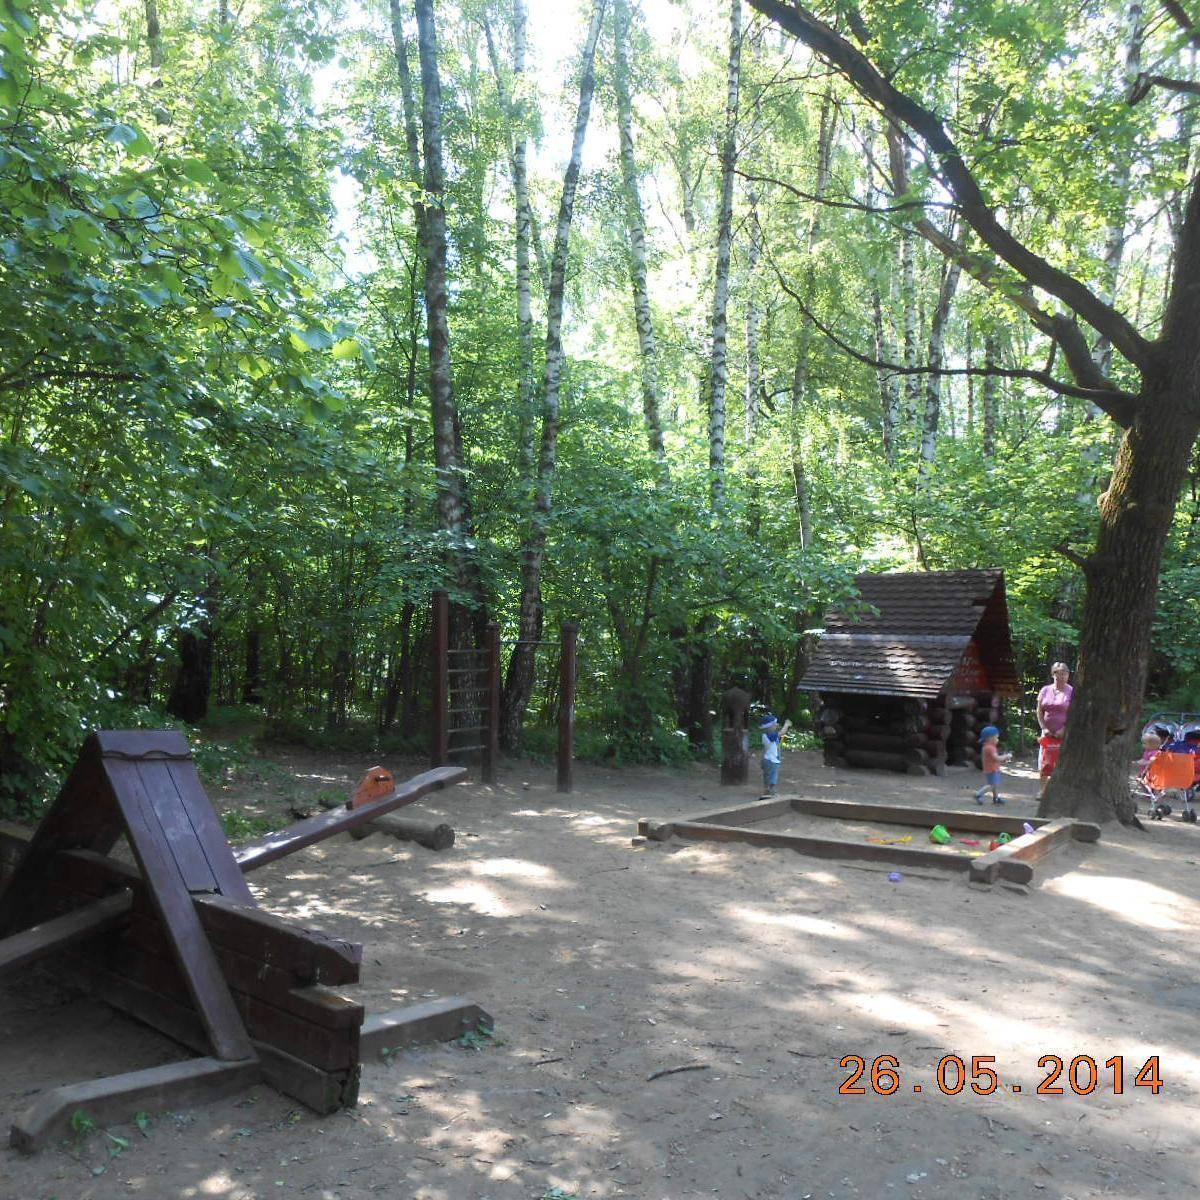 Фото: Детская игровая площадка №15, Битцевский лес рядом с Варшавским шоссе